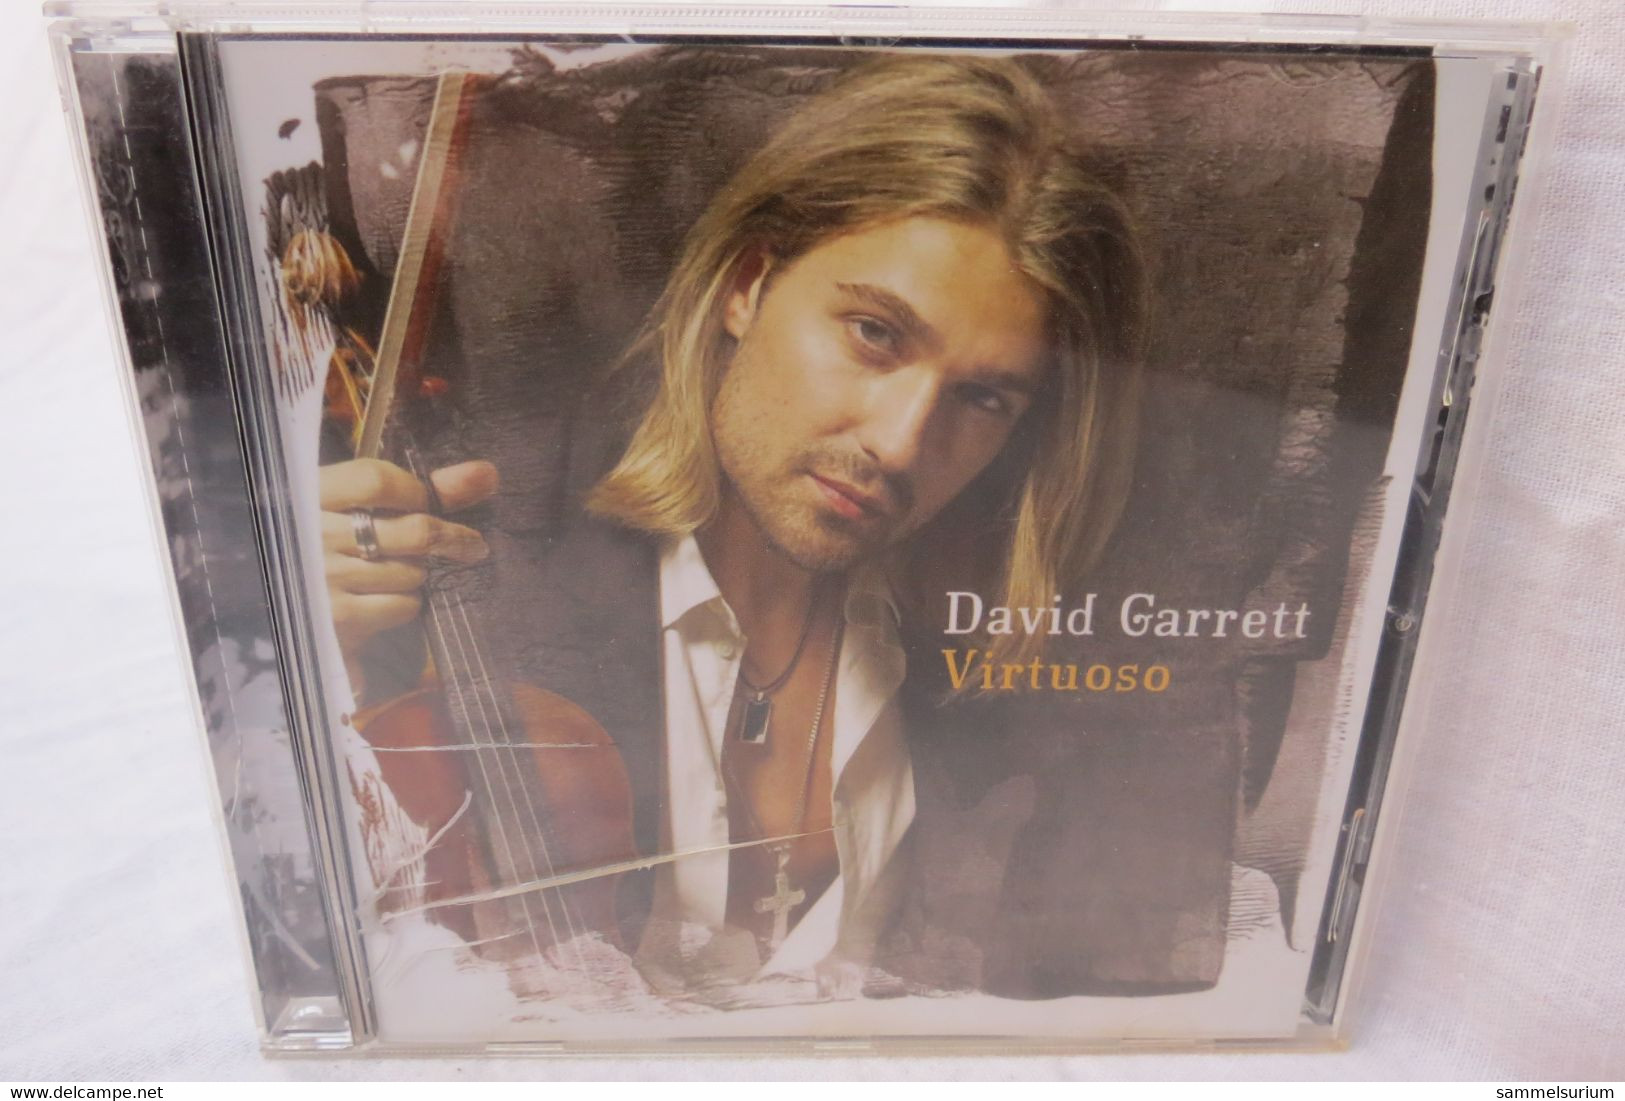 CD "David Garrett" Virtuoso - Instrumental